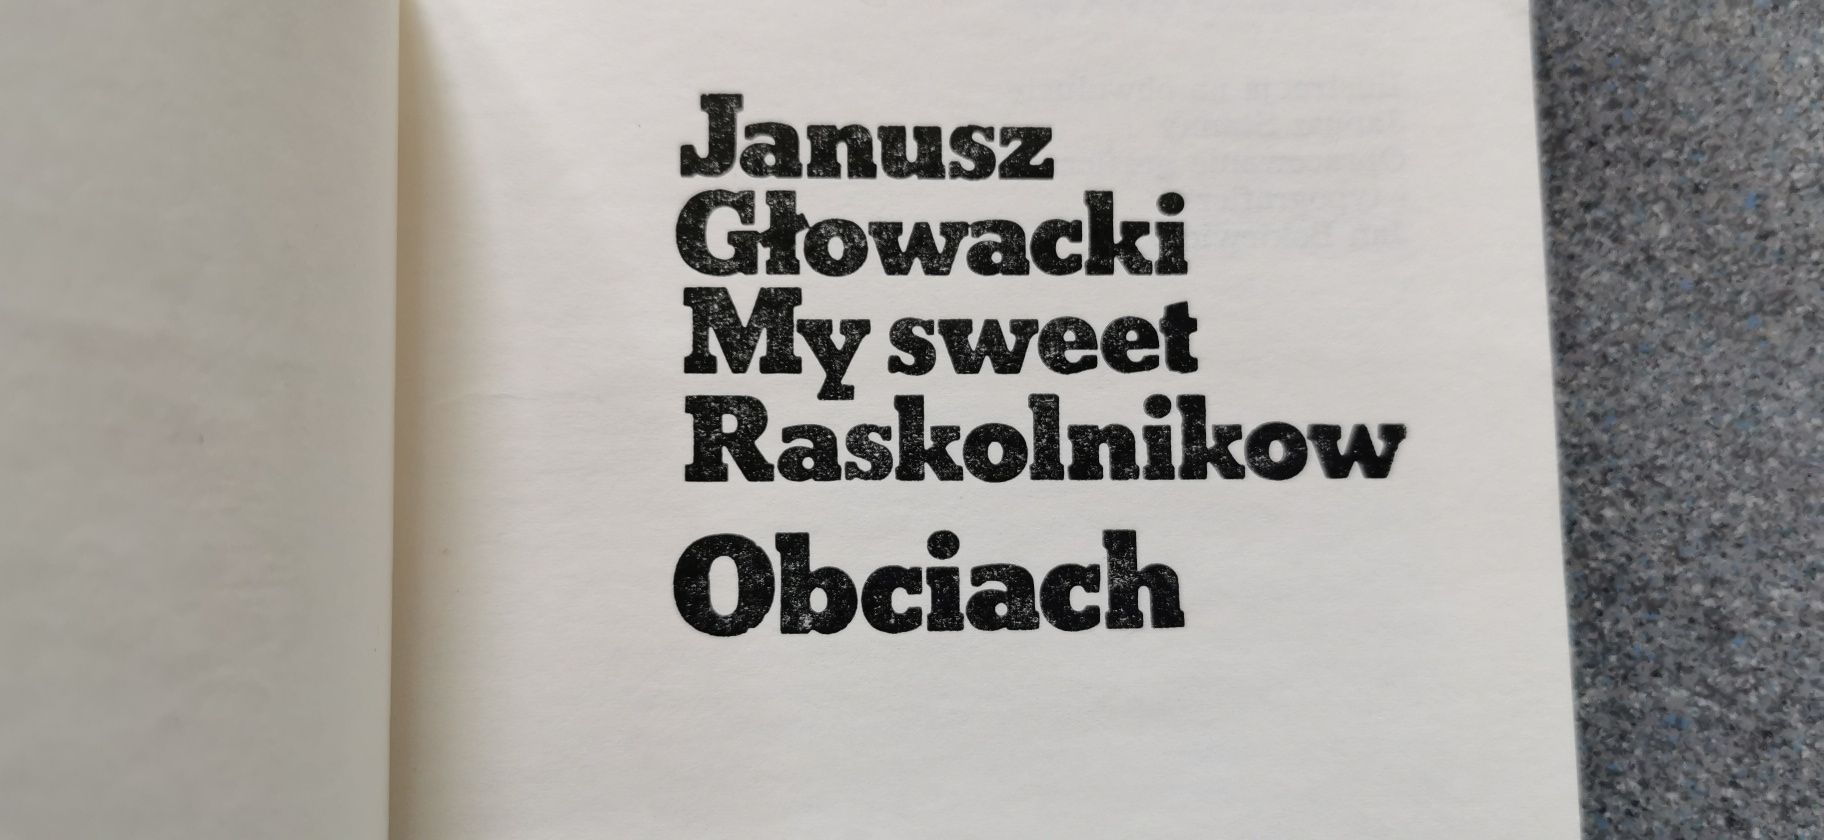 Janusz Głowacki 
My sweet Raskolnikow Obciach
.